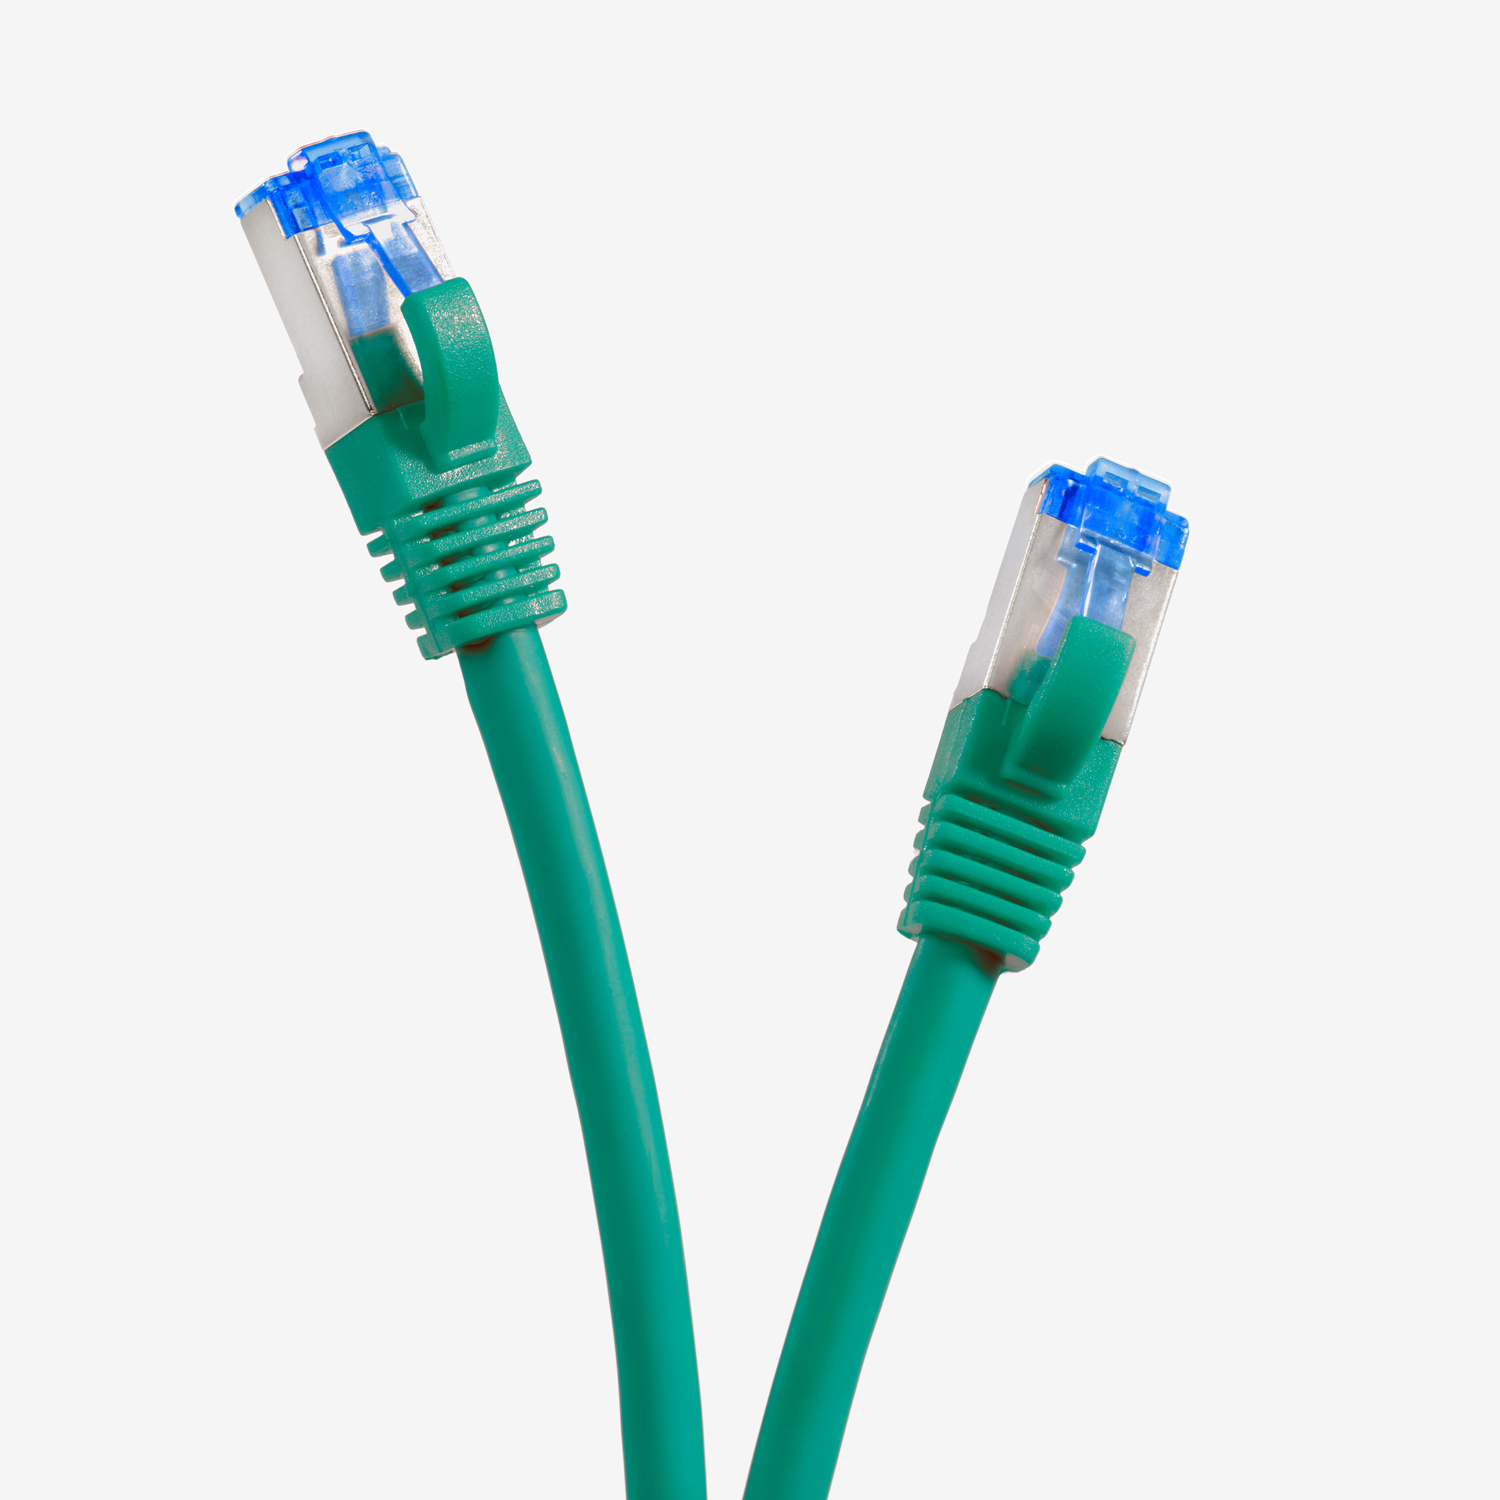 TPFNET 5er Pack 7,5m Patchkabel S/FTP m 7,5 10GBit, Netzwerkkabel Netzwerkkabel, grün, 